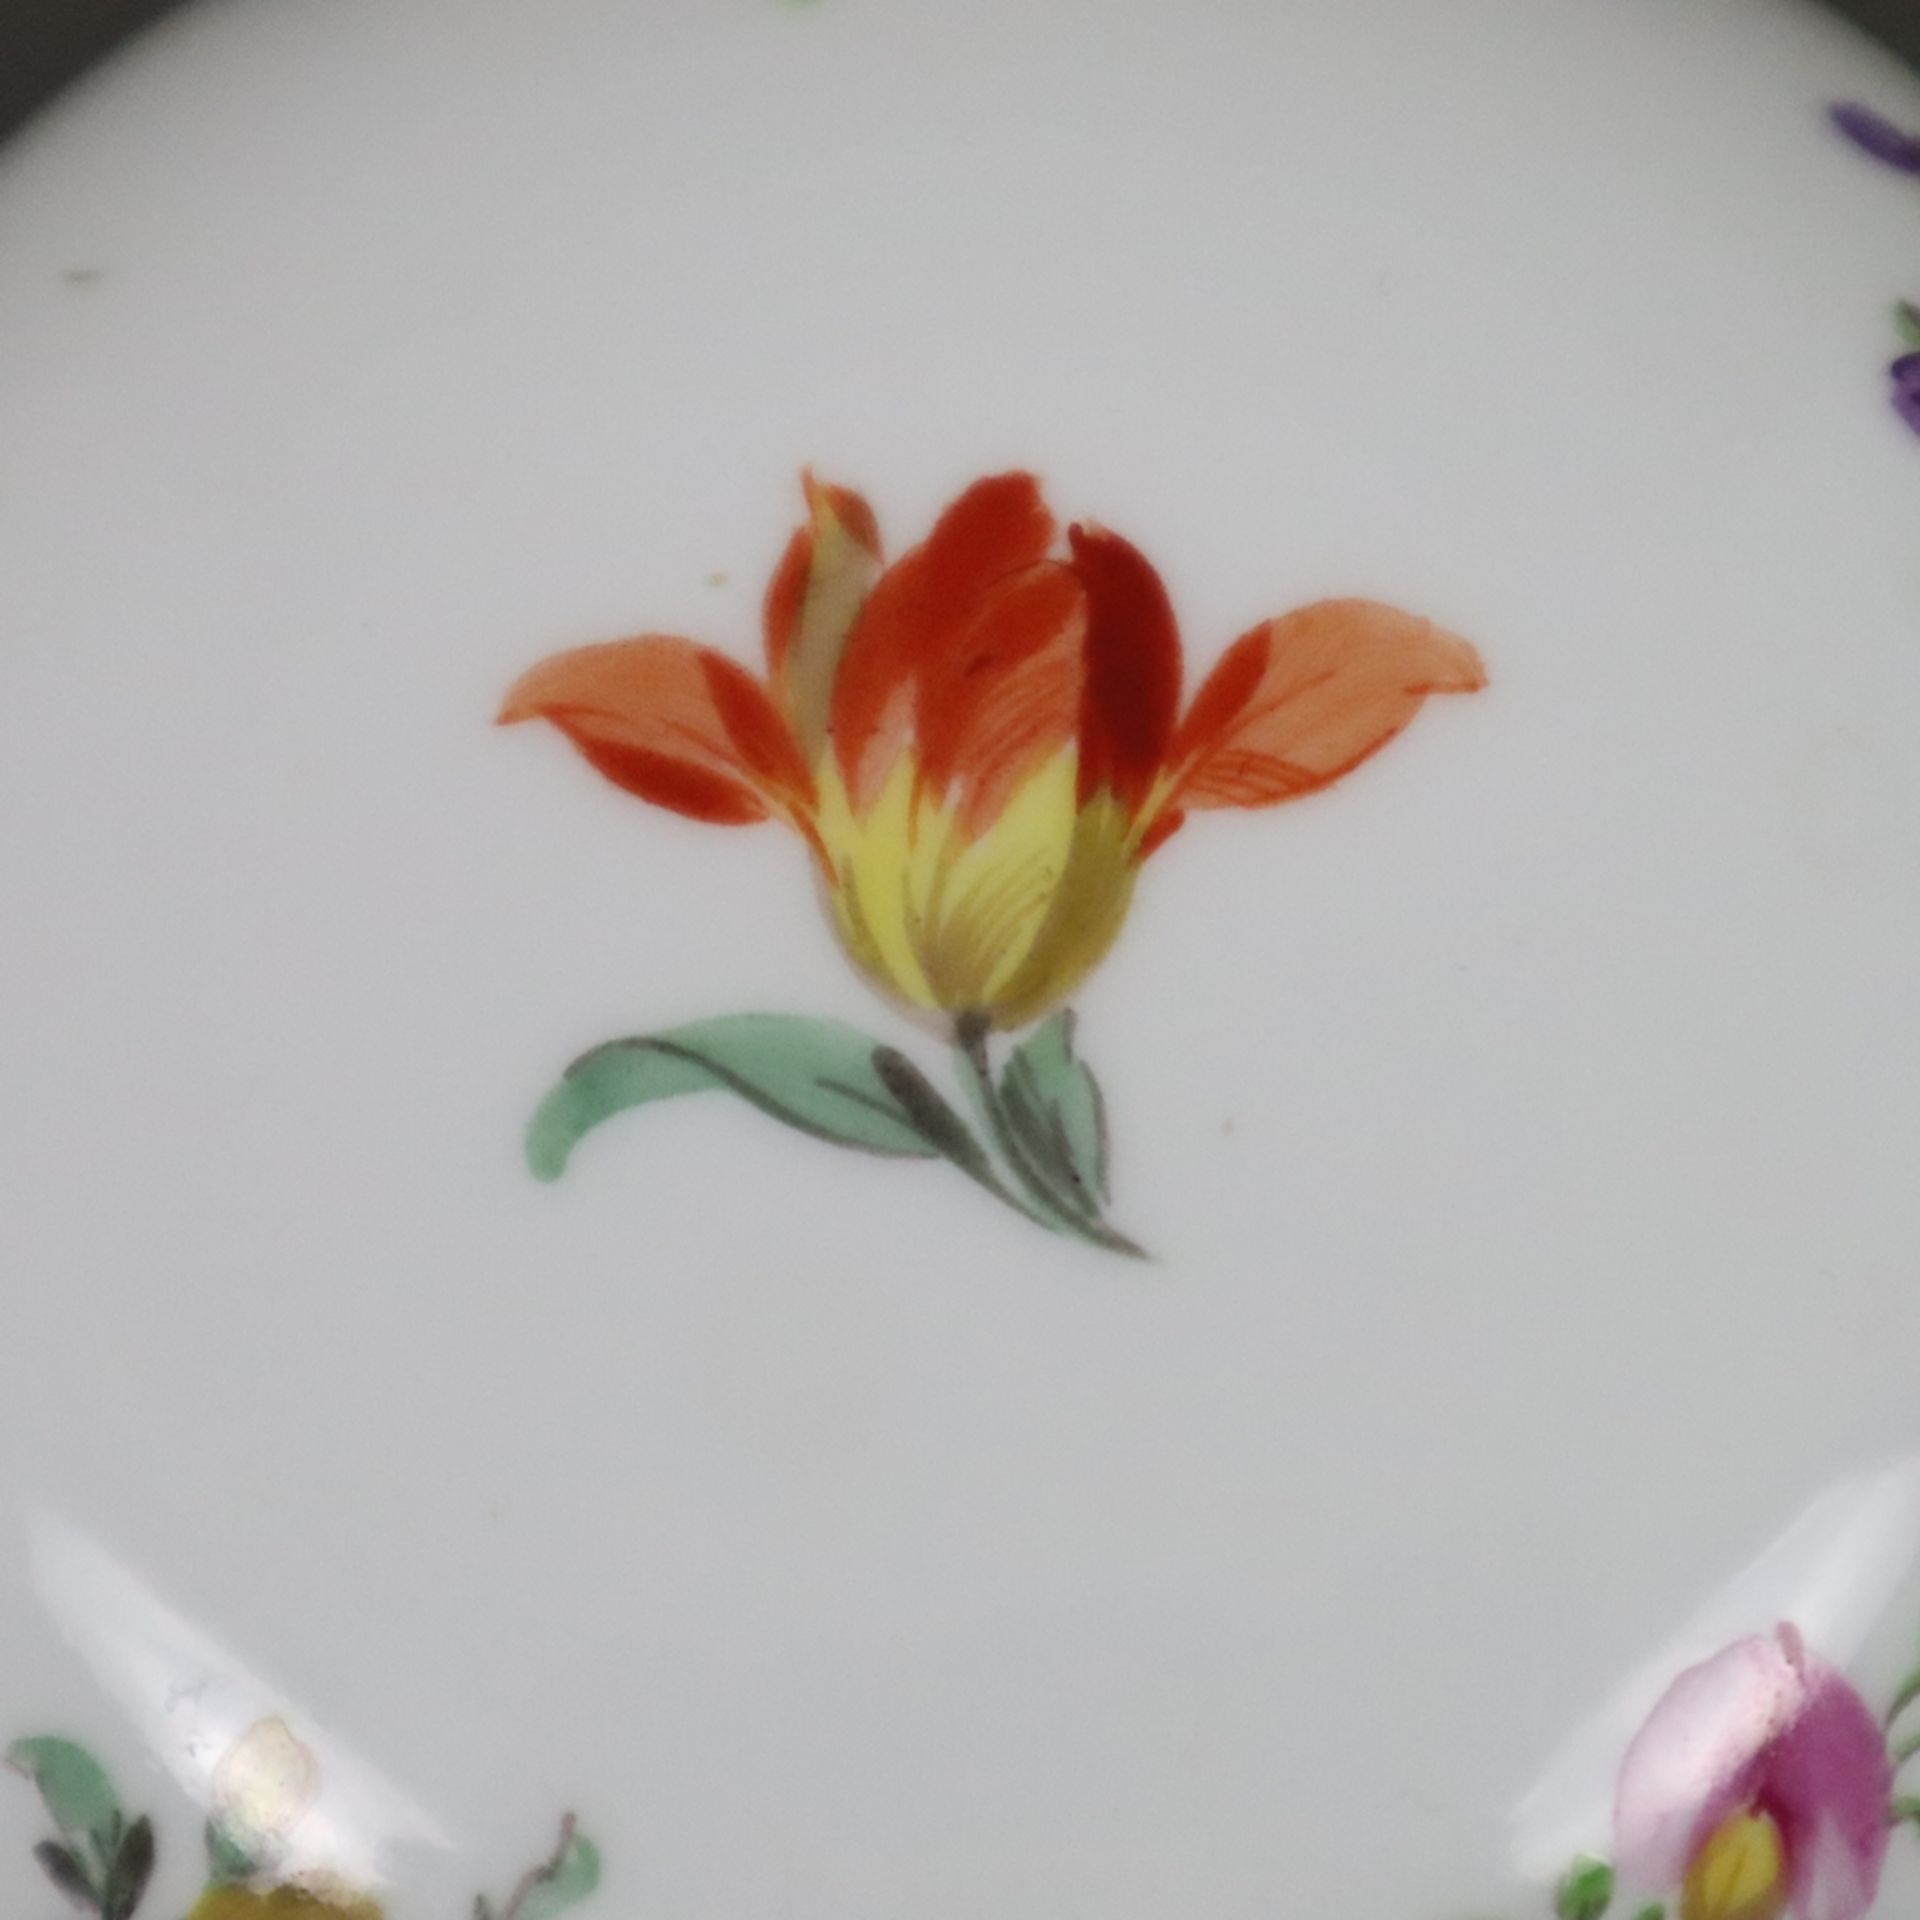 Deckeldose - Meissen, Porzellan, gedrückte Kugelform, fein bemalt mit gestreuten Frühlingsblumen, G - Image 4 of 7